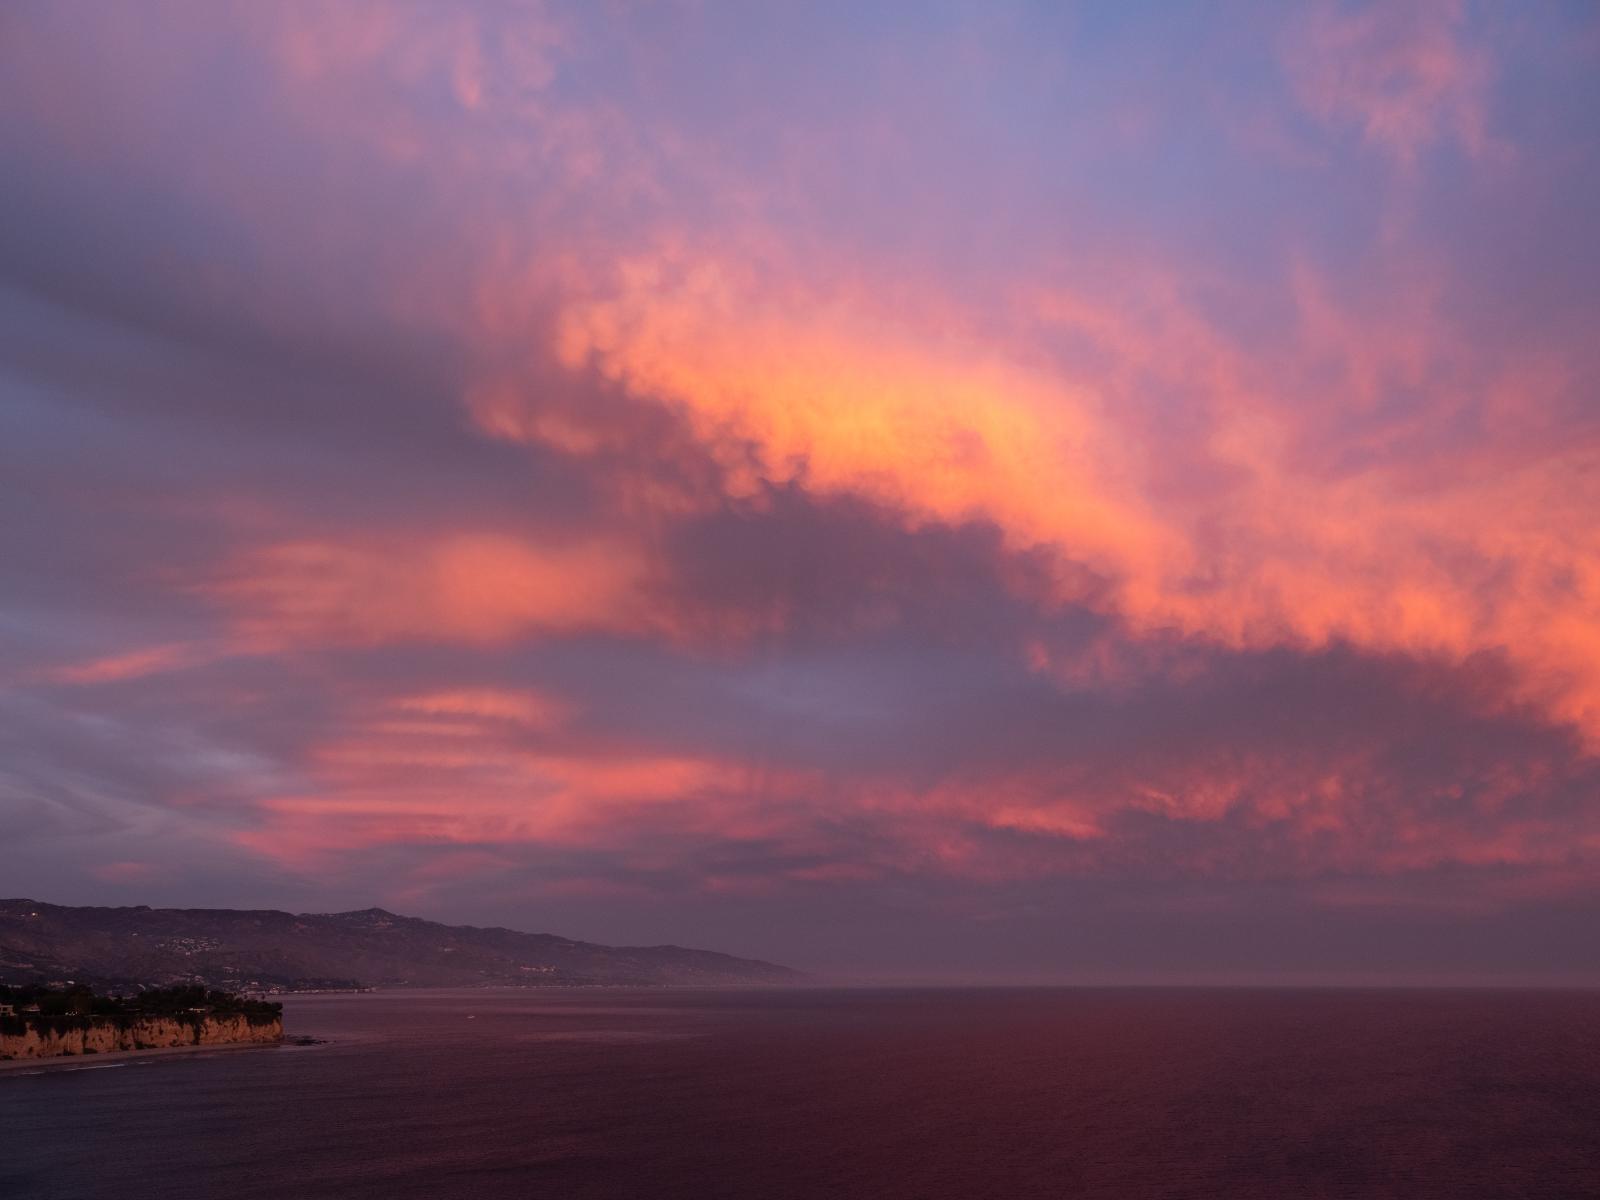 Malibu Sunset | Buy this image